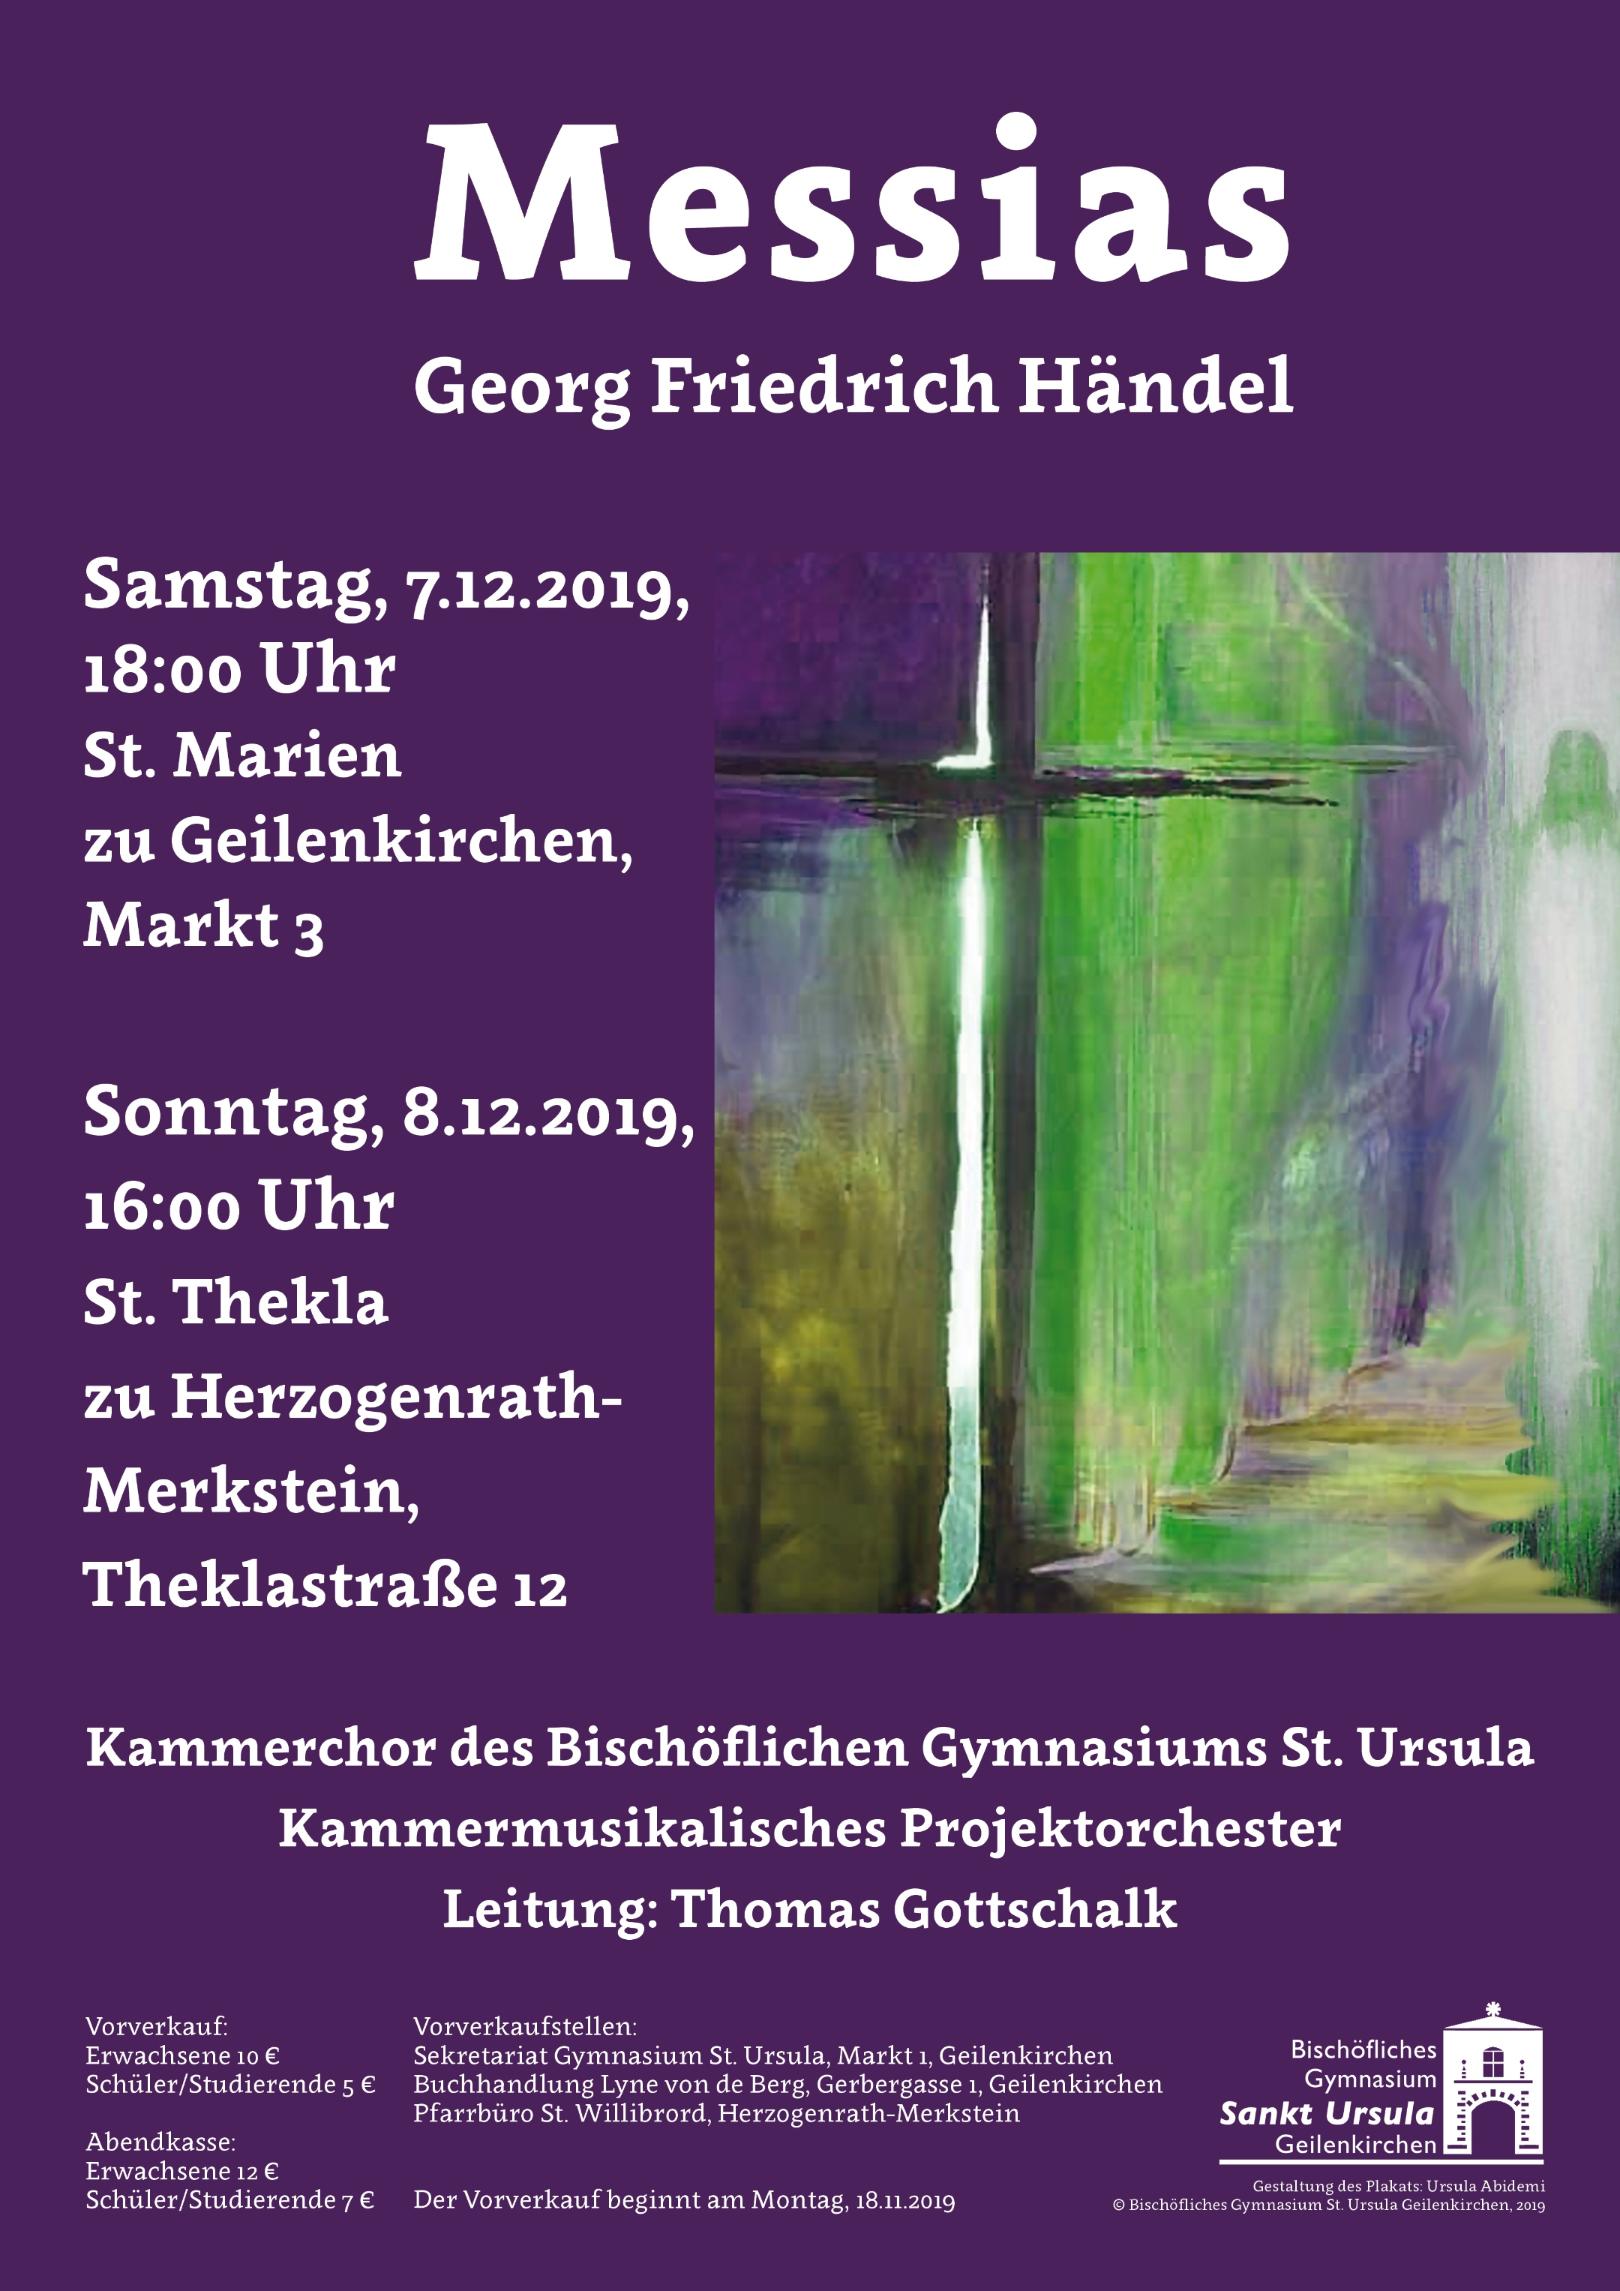 G. F. Händel - Messias: Plakat zu den Aufführungen (c) Bischöfliches Gymnasium St. Ursula Geilenkirchen